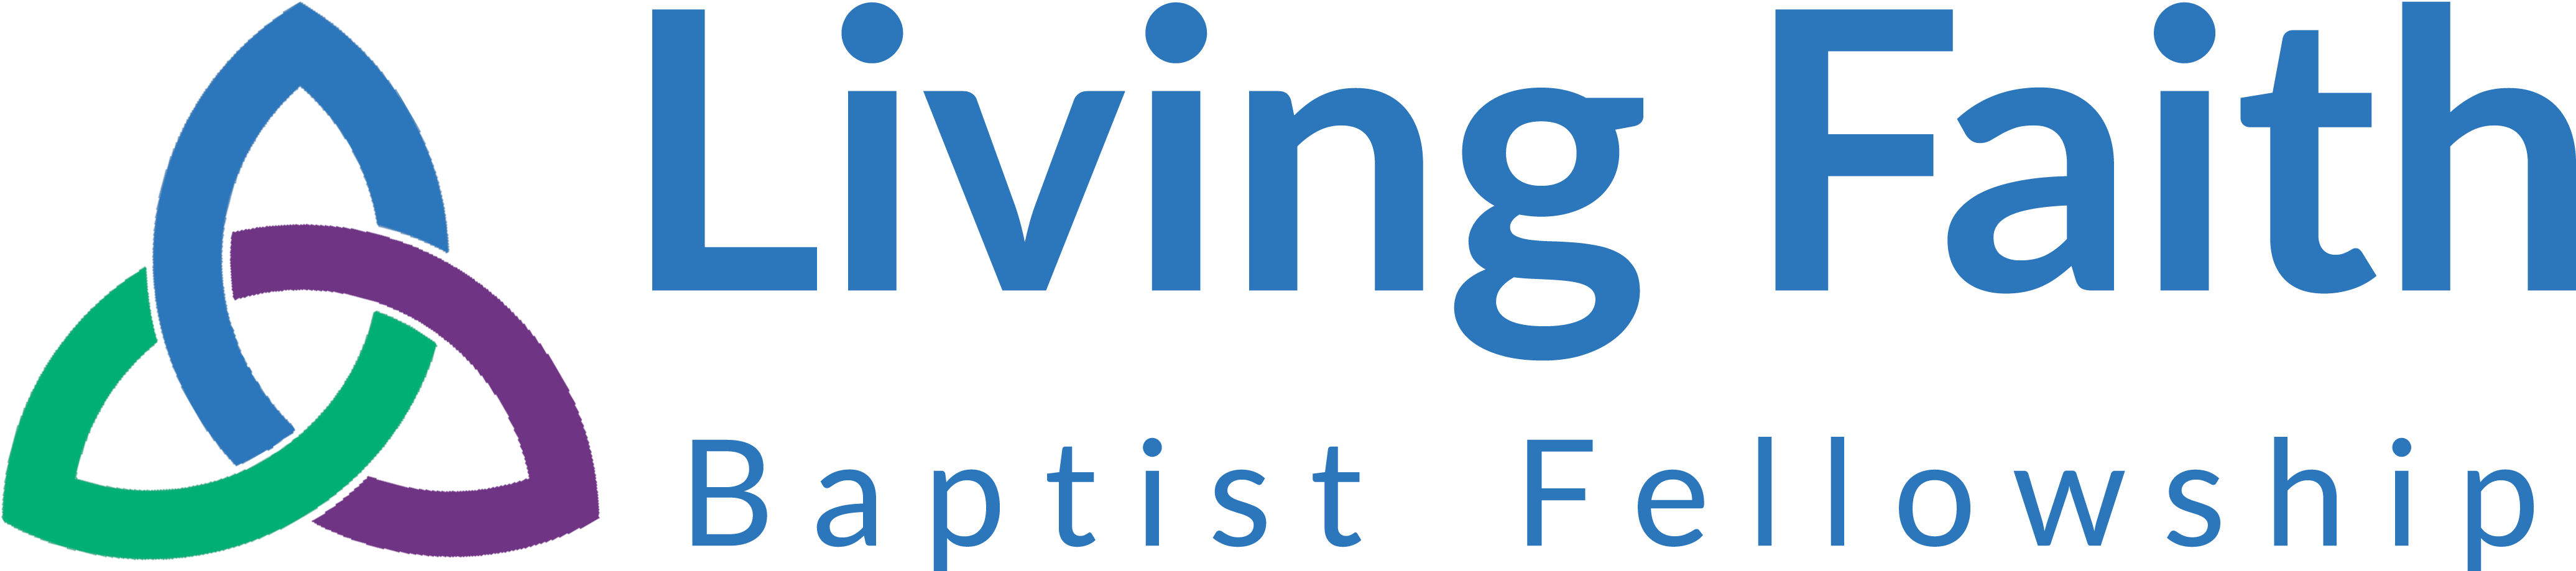 Living Faith Baptist Fellowship - Living Faith Baptist Fellowship Logo (4500x1200)